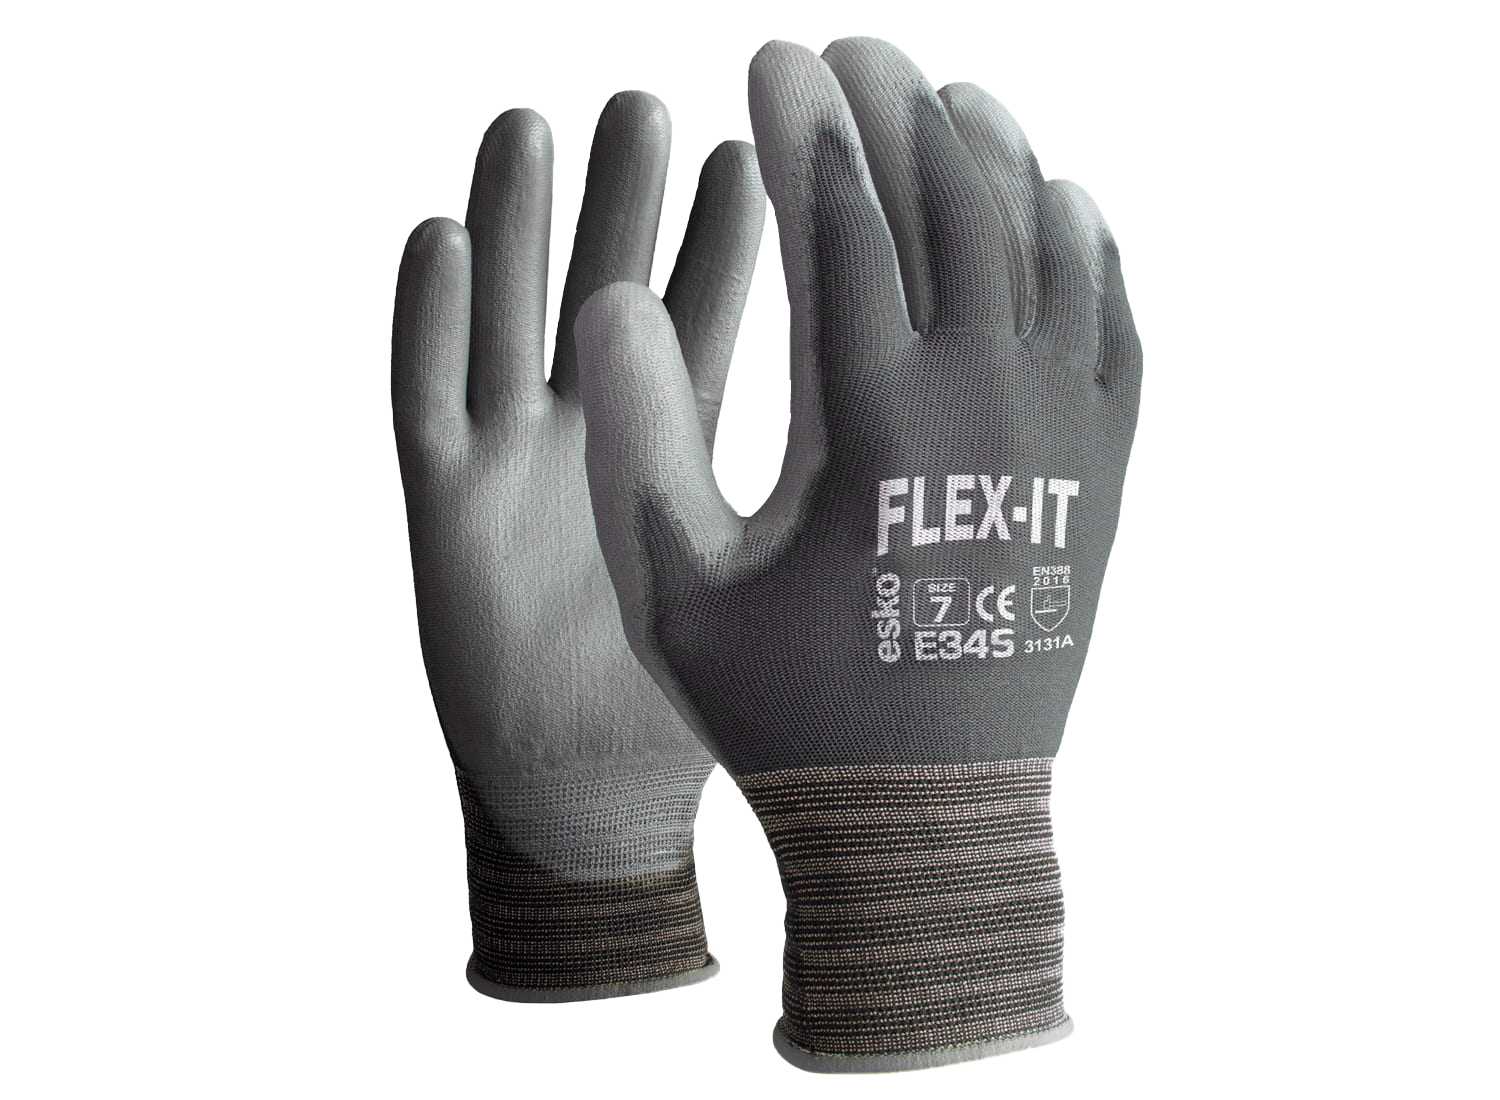 Flex it PU Coated Glove